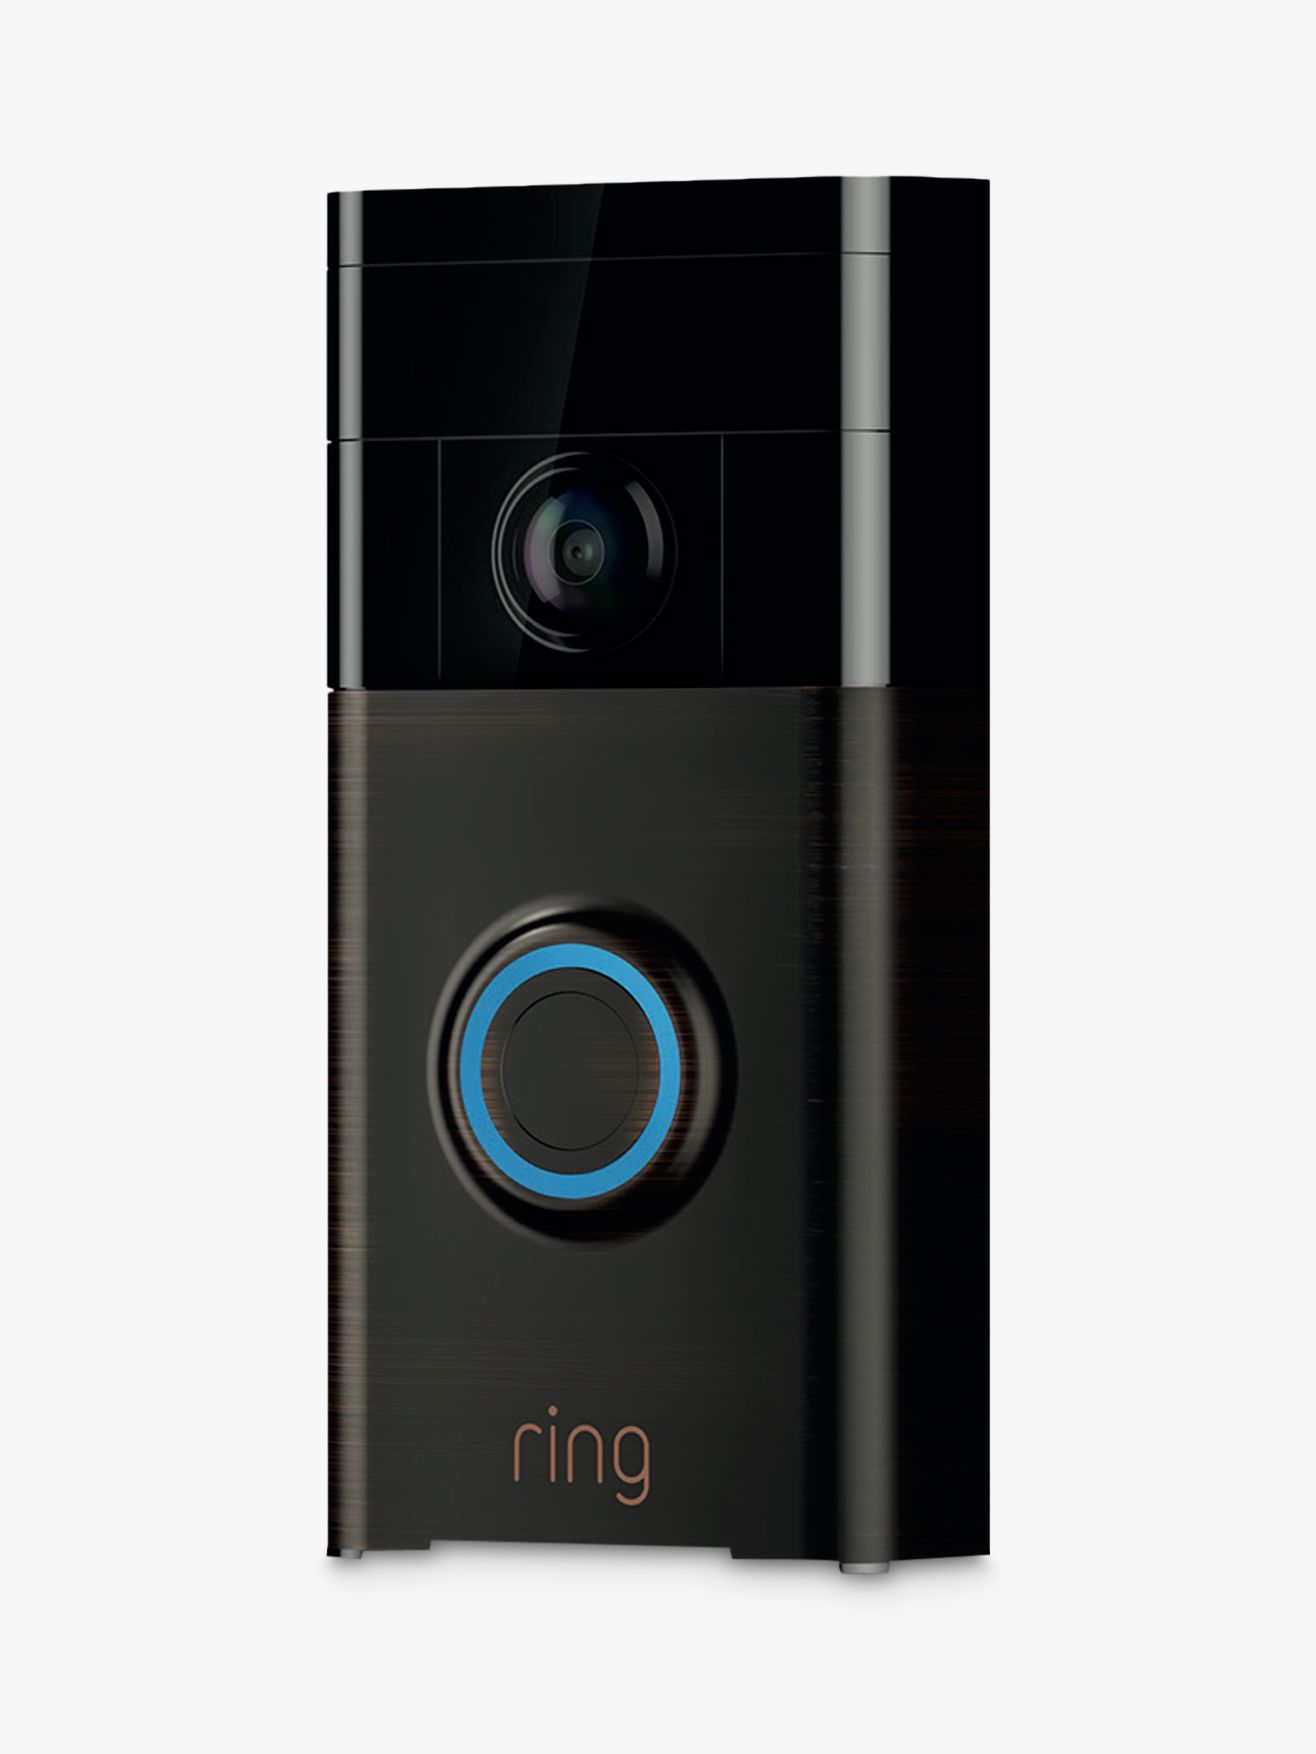 ring smart video doorbell